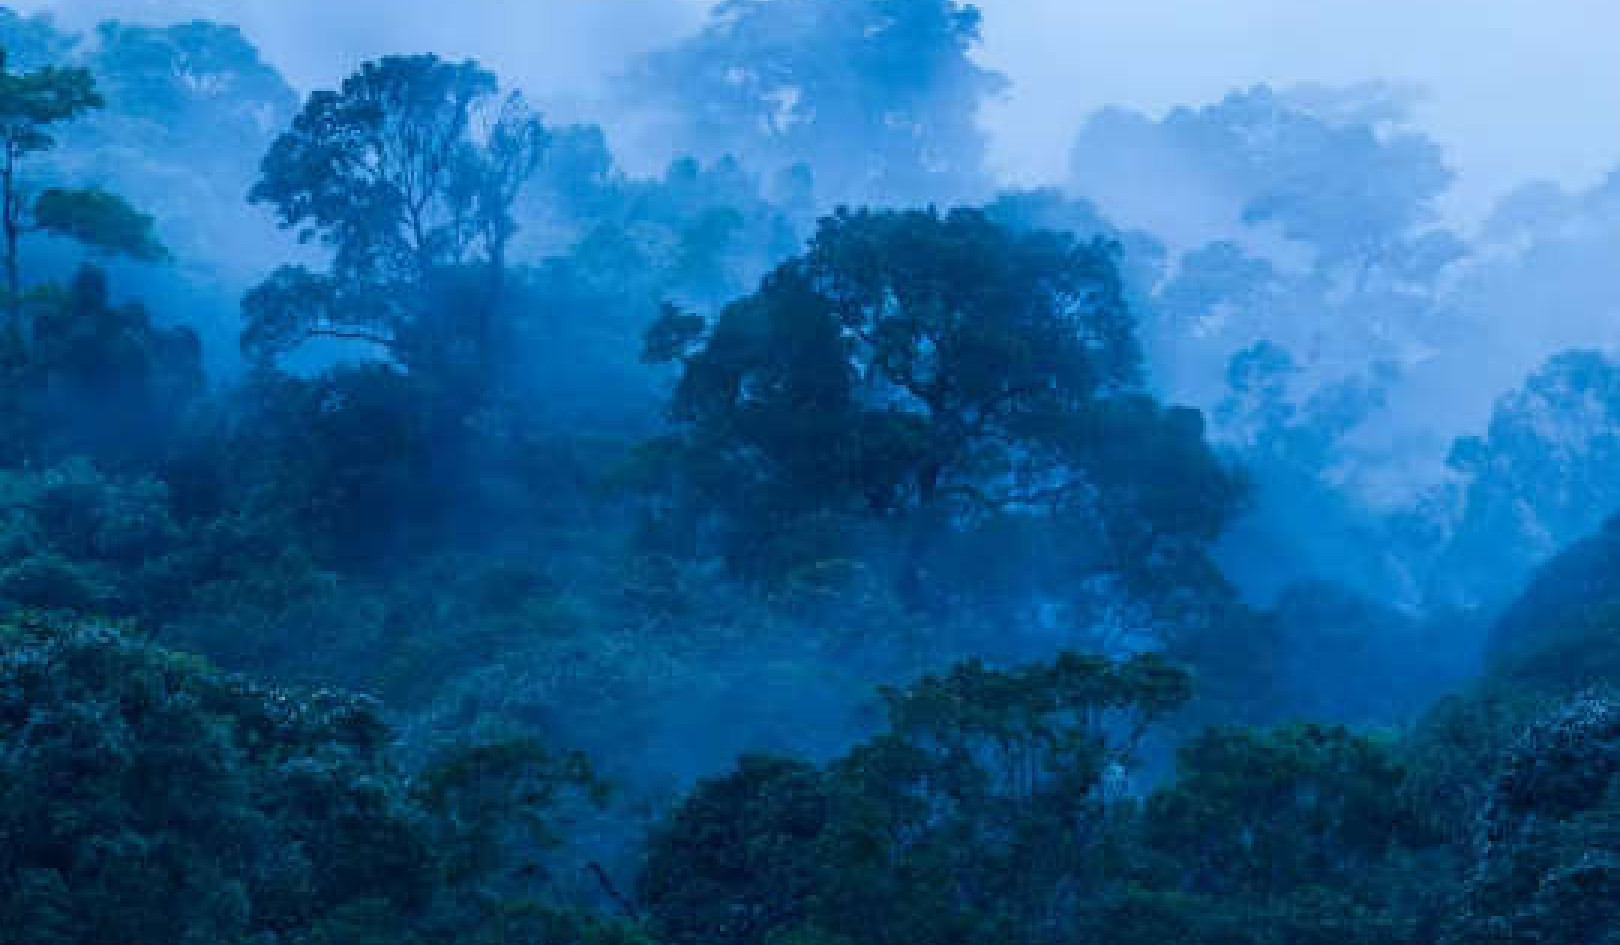 اشنکٹبندیی علاقوں میں جنگلات موسمیاتی تبدیلی سے نمٹنے کے لیے اہم ہیں۔